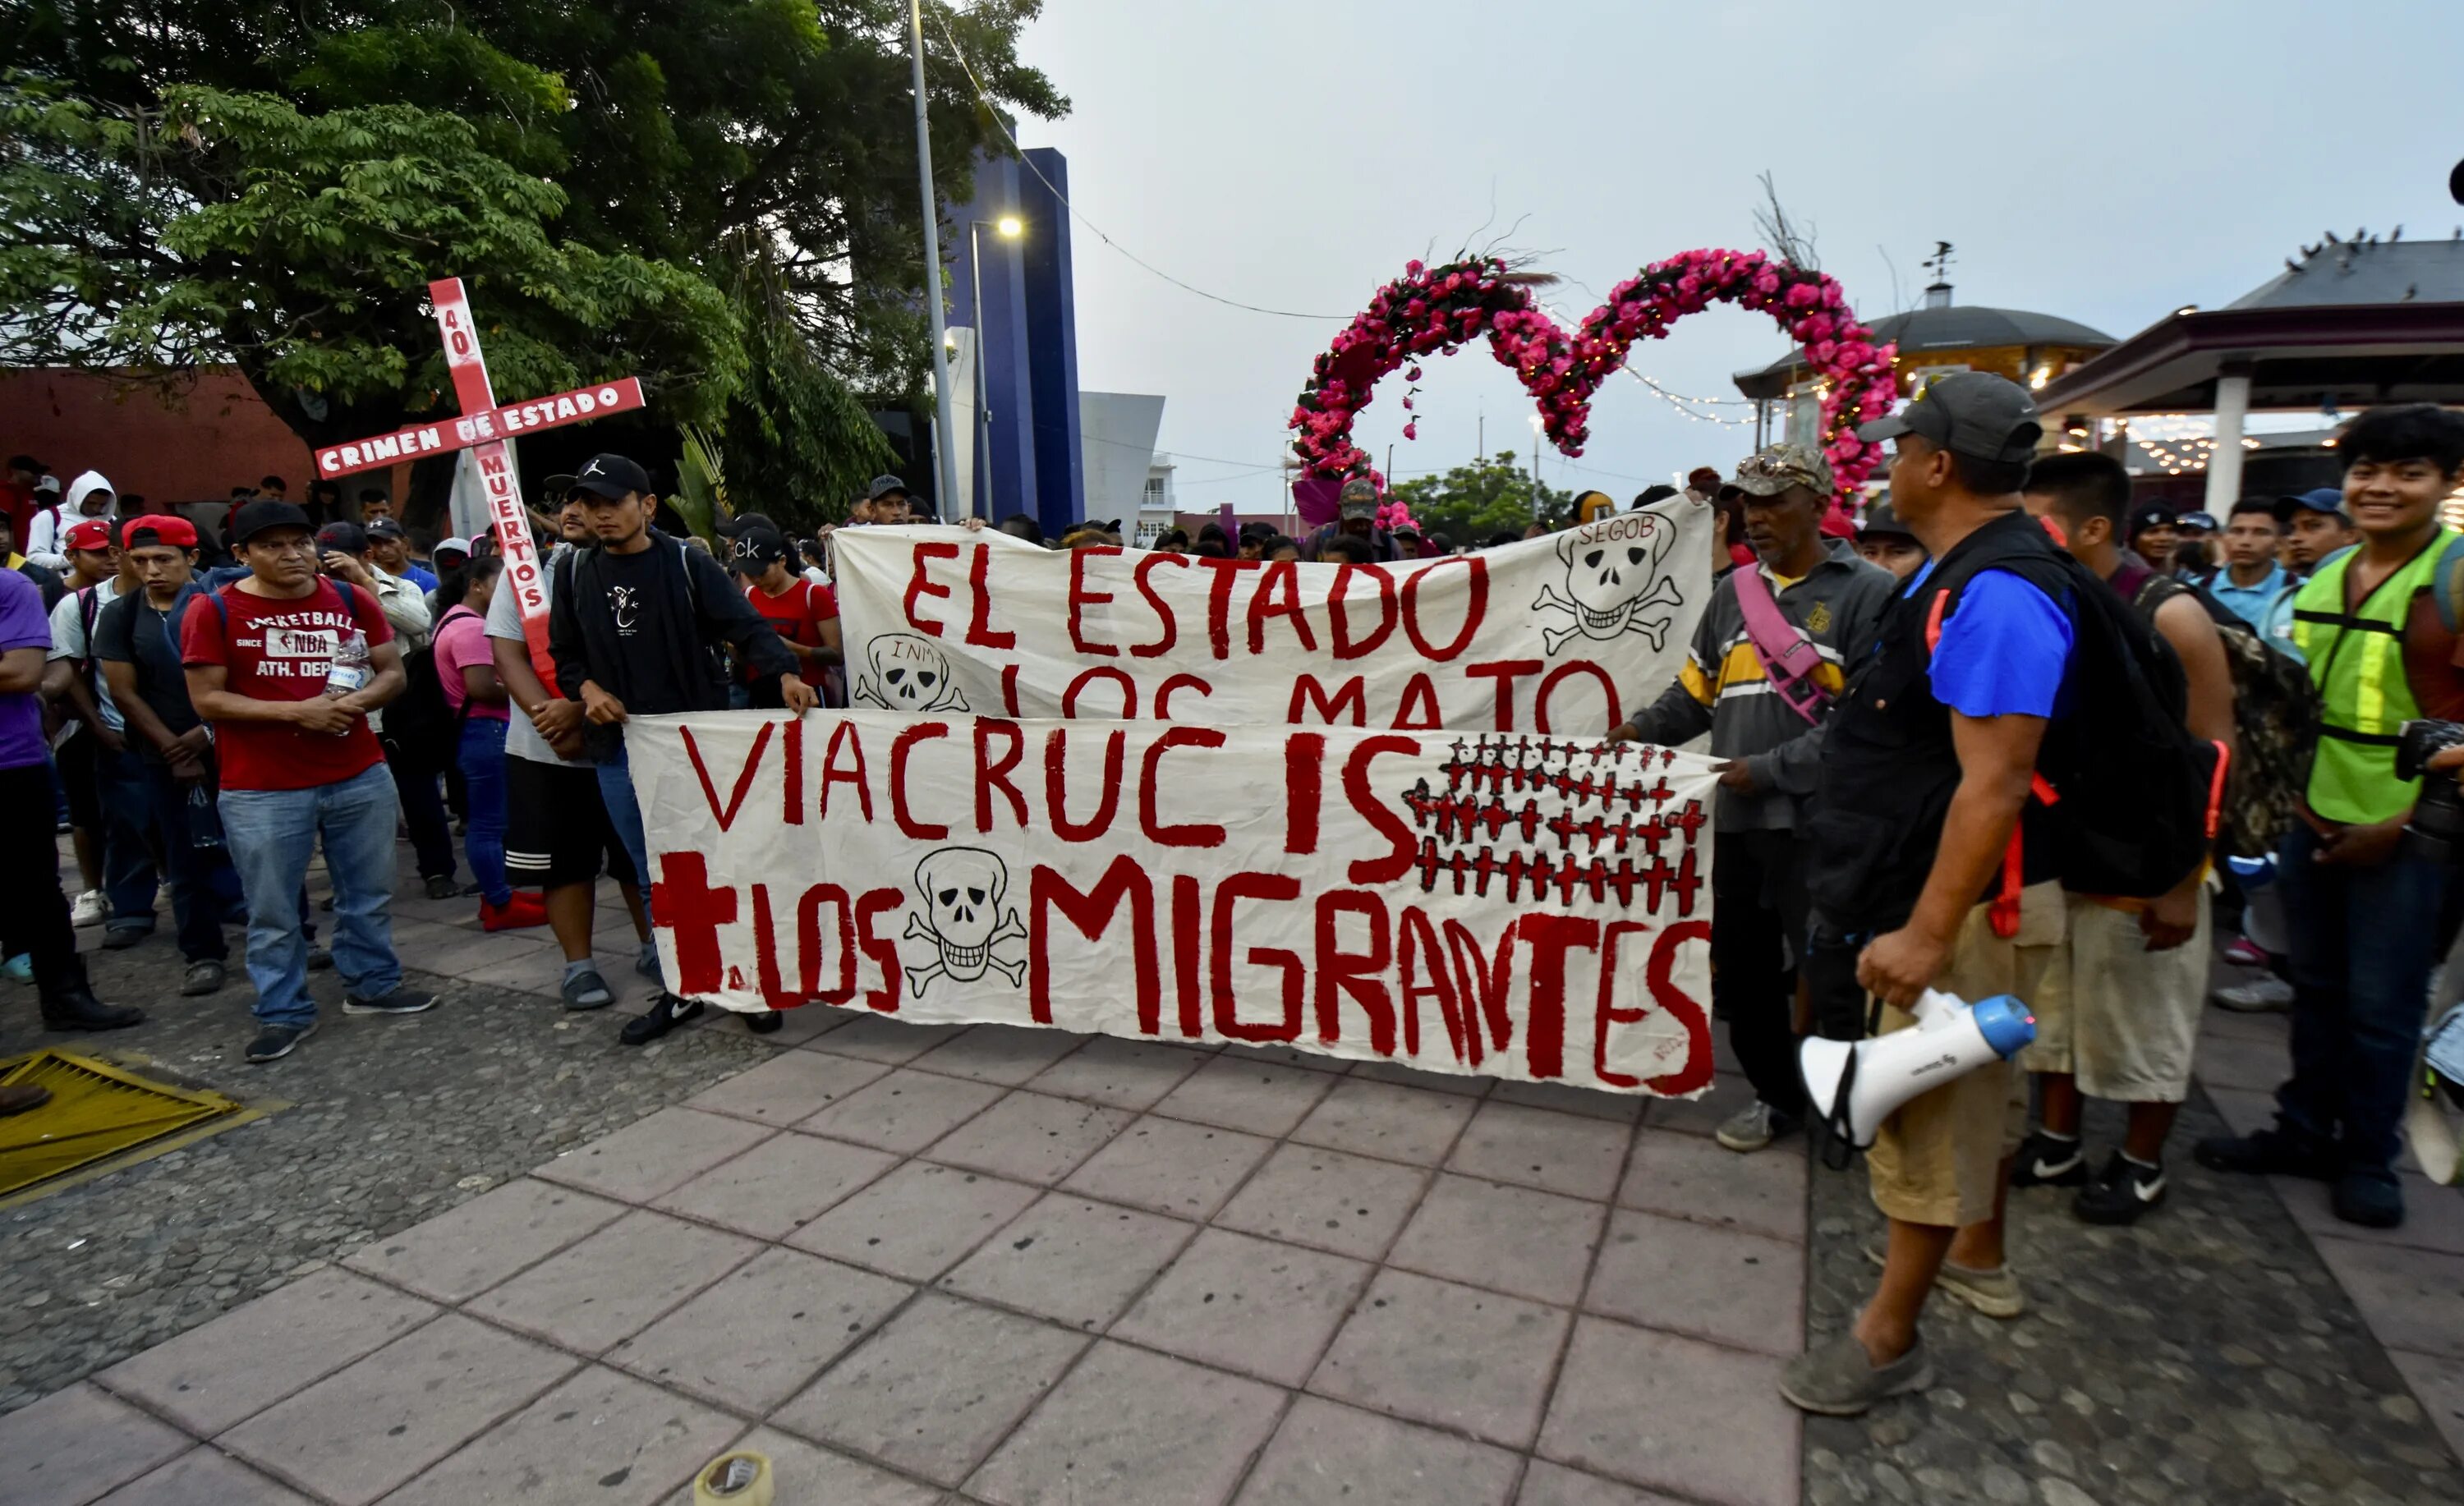 Протесты против мигрантов. Демонстрация. Американцы против мигрантов. Шествие мигрантов 21.04.2023. Мексика митинг